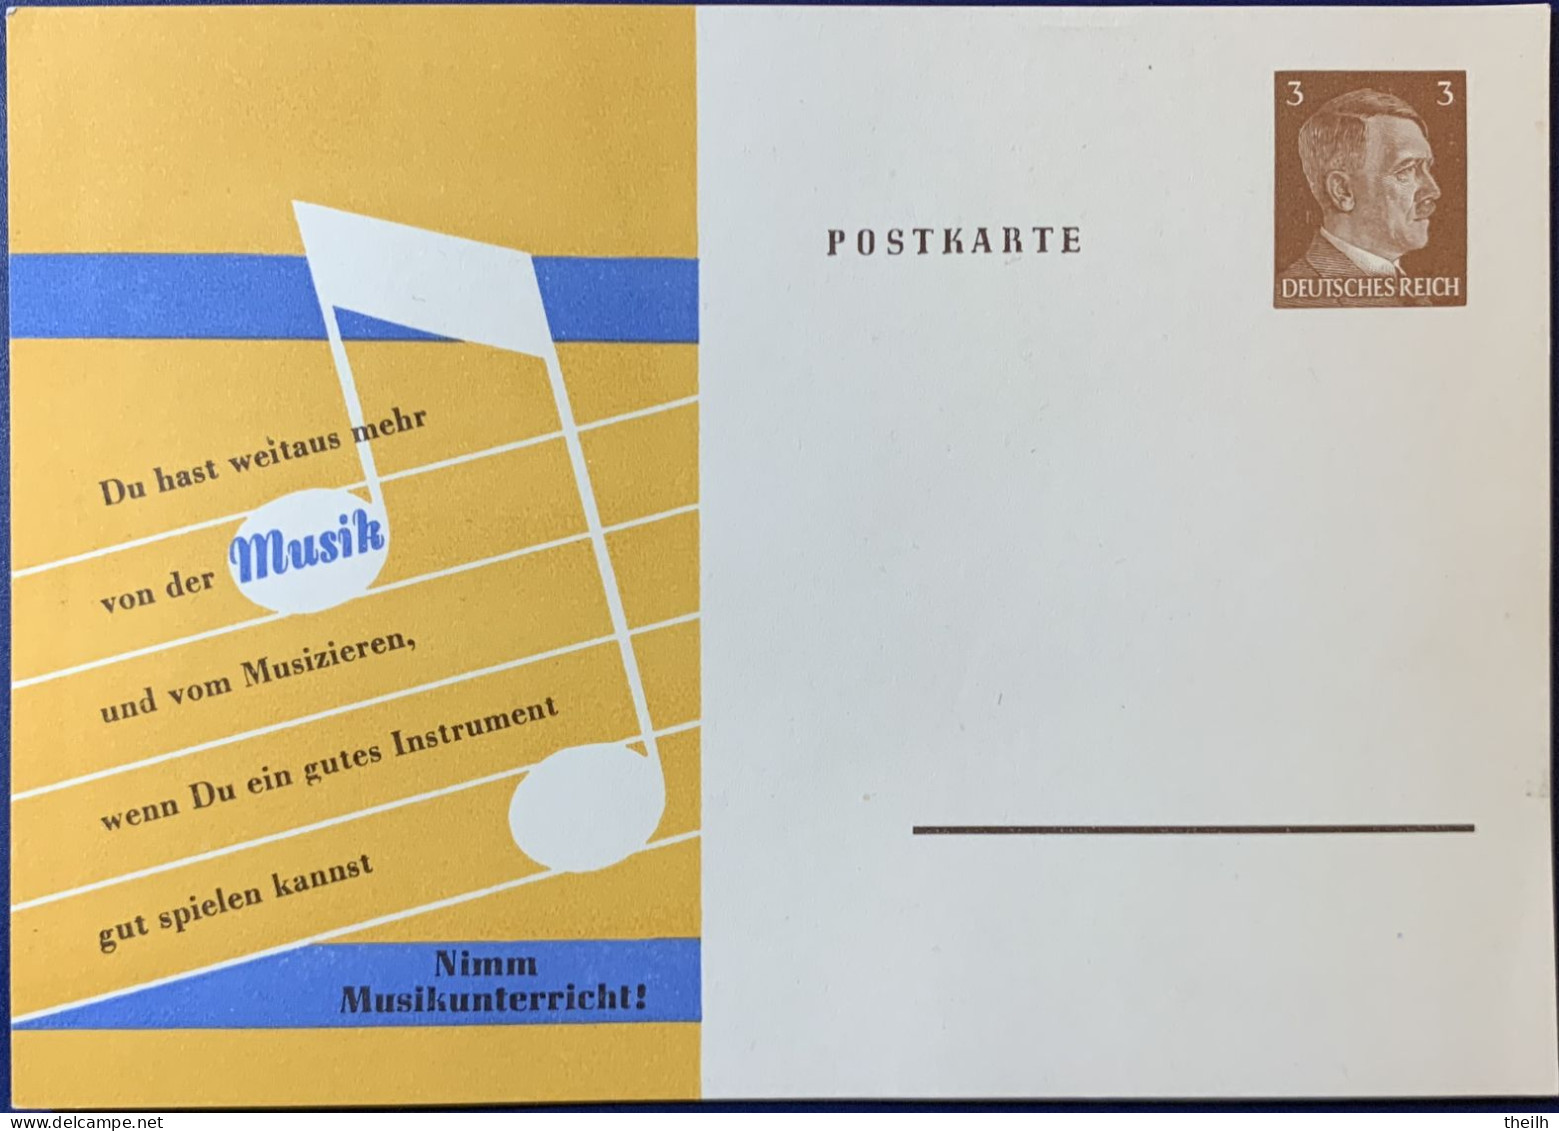 Privatganzsache Postkarte "Nimm Musikunterricht!" - Private Postal Stationery